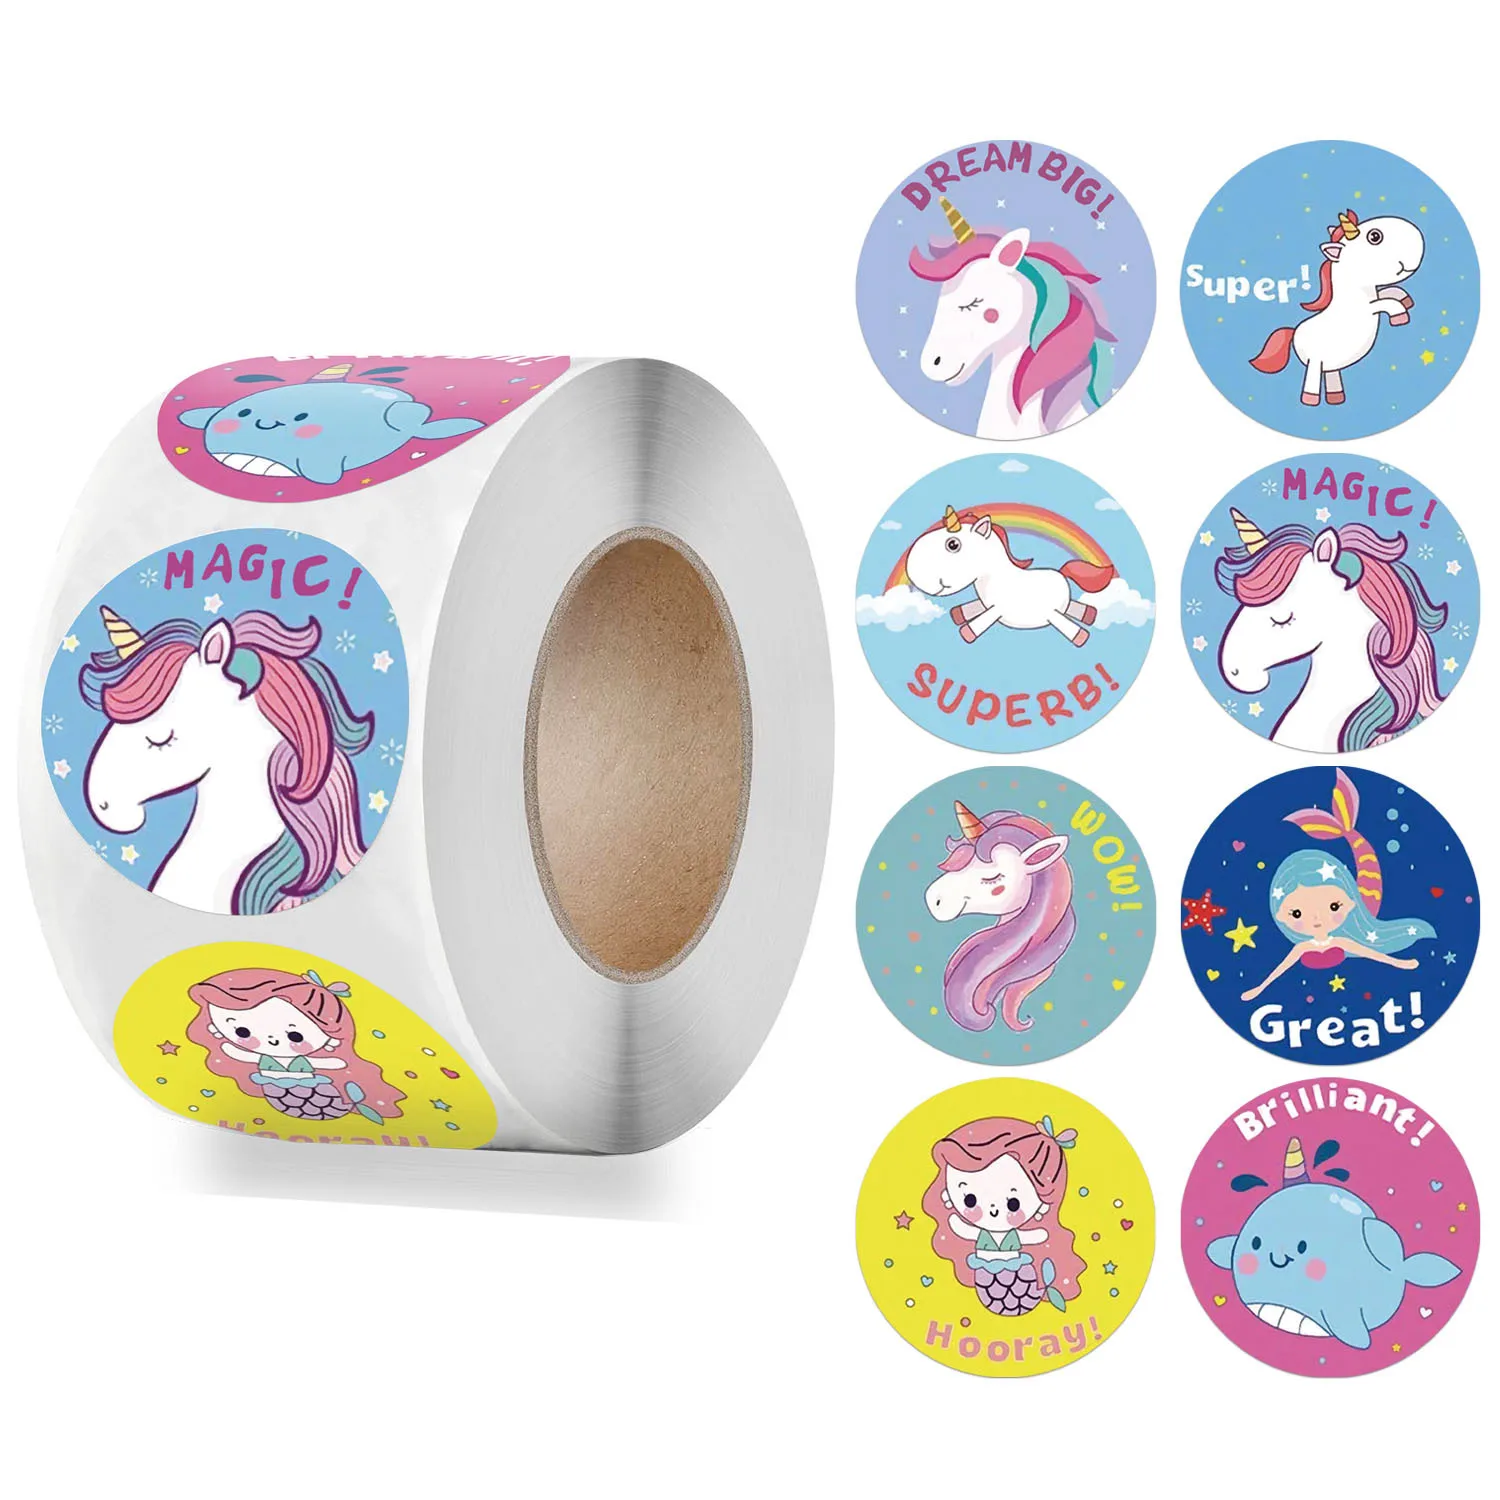 50-500pcs Reward Sticker for Kids Mermaid Unicorn Animal Cute Pattern 1 inch 8 Designs School Teacher Supplies Child Sticker